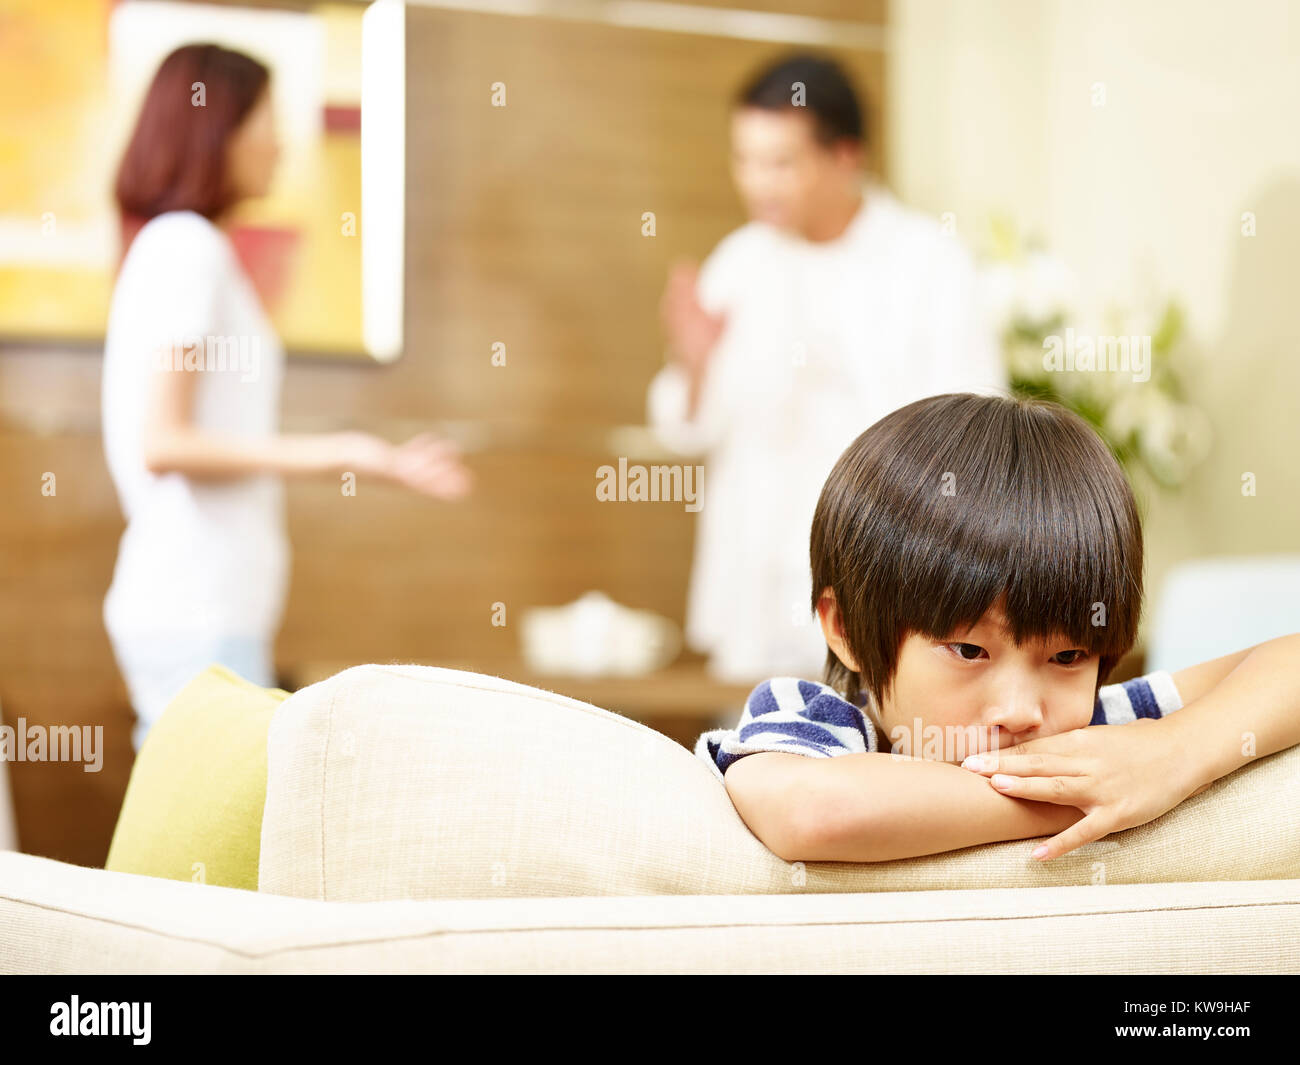 Enfant asiatique semble triste et malheureux alors que les parents se disputer à l'arrière-plan. Banque D'Images